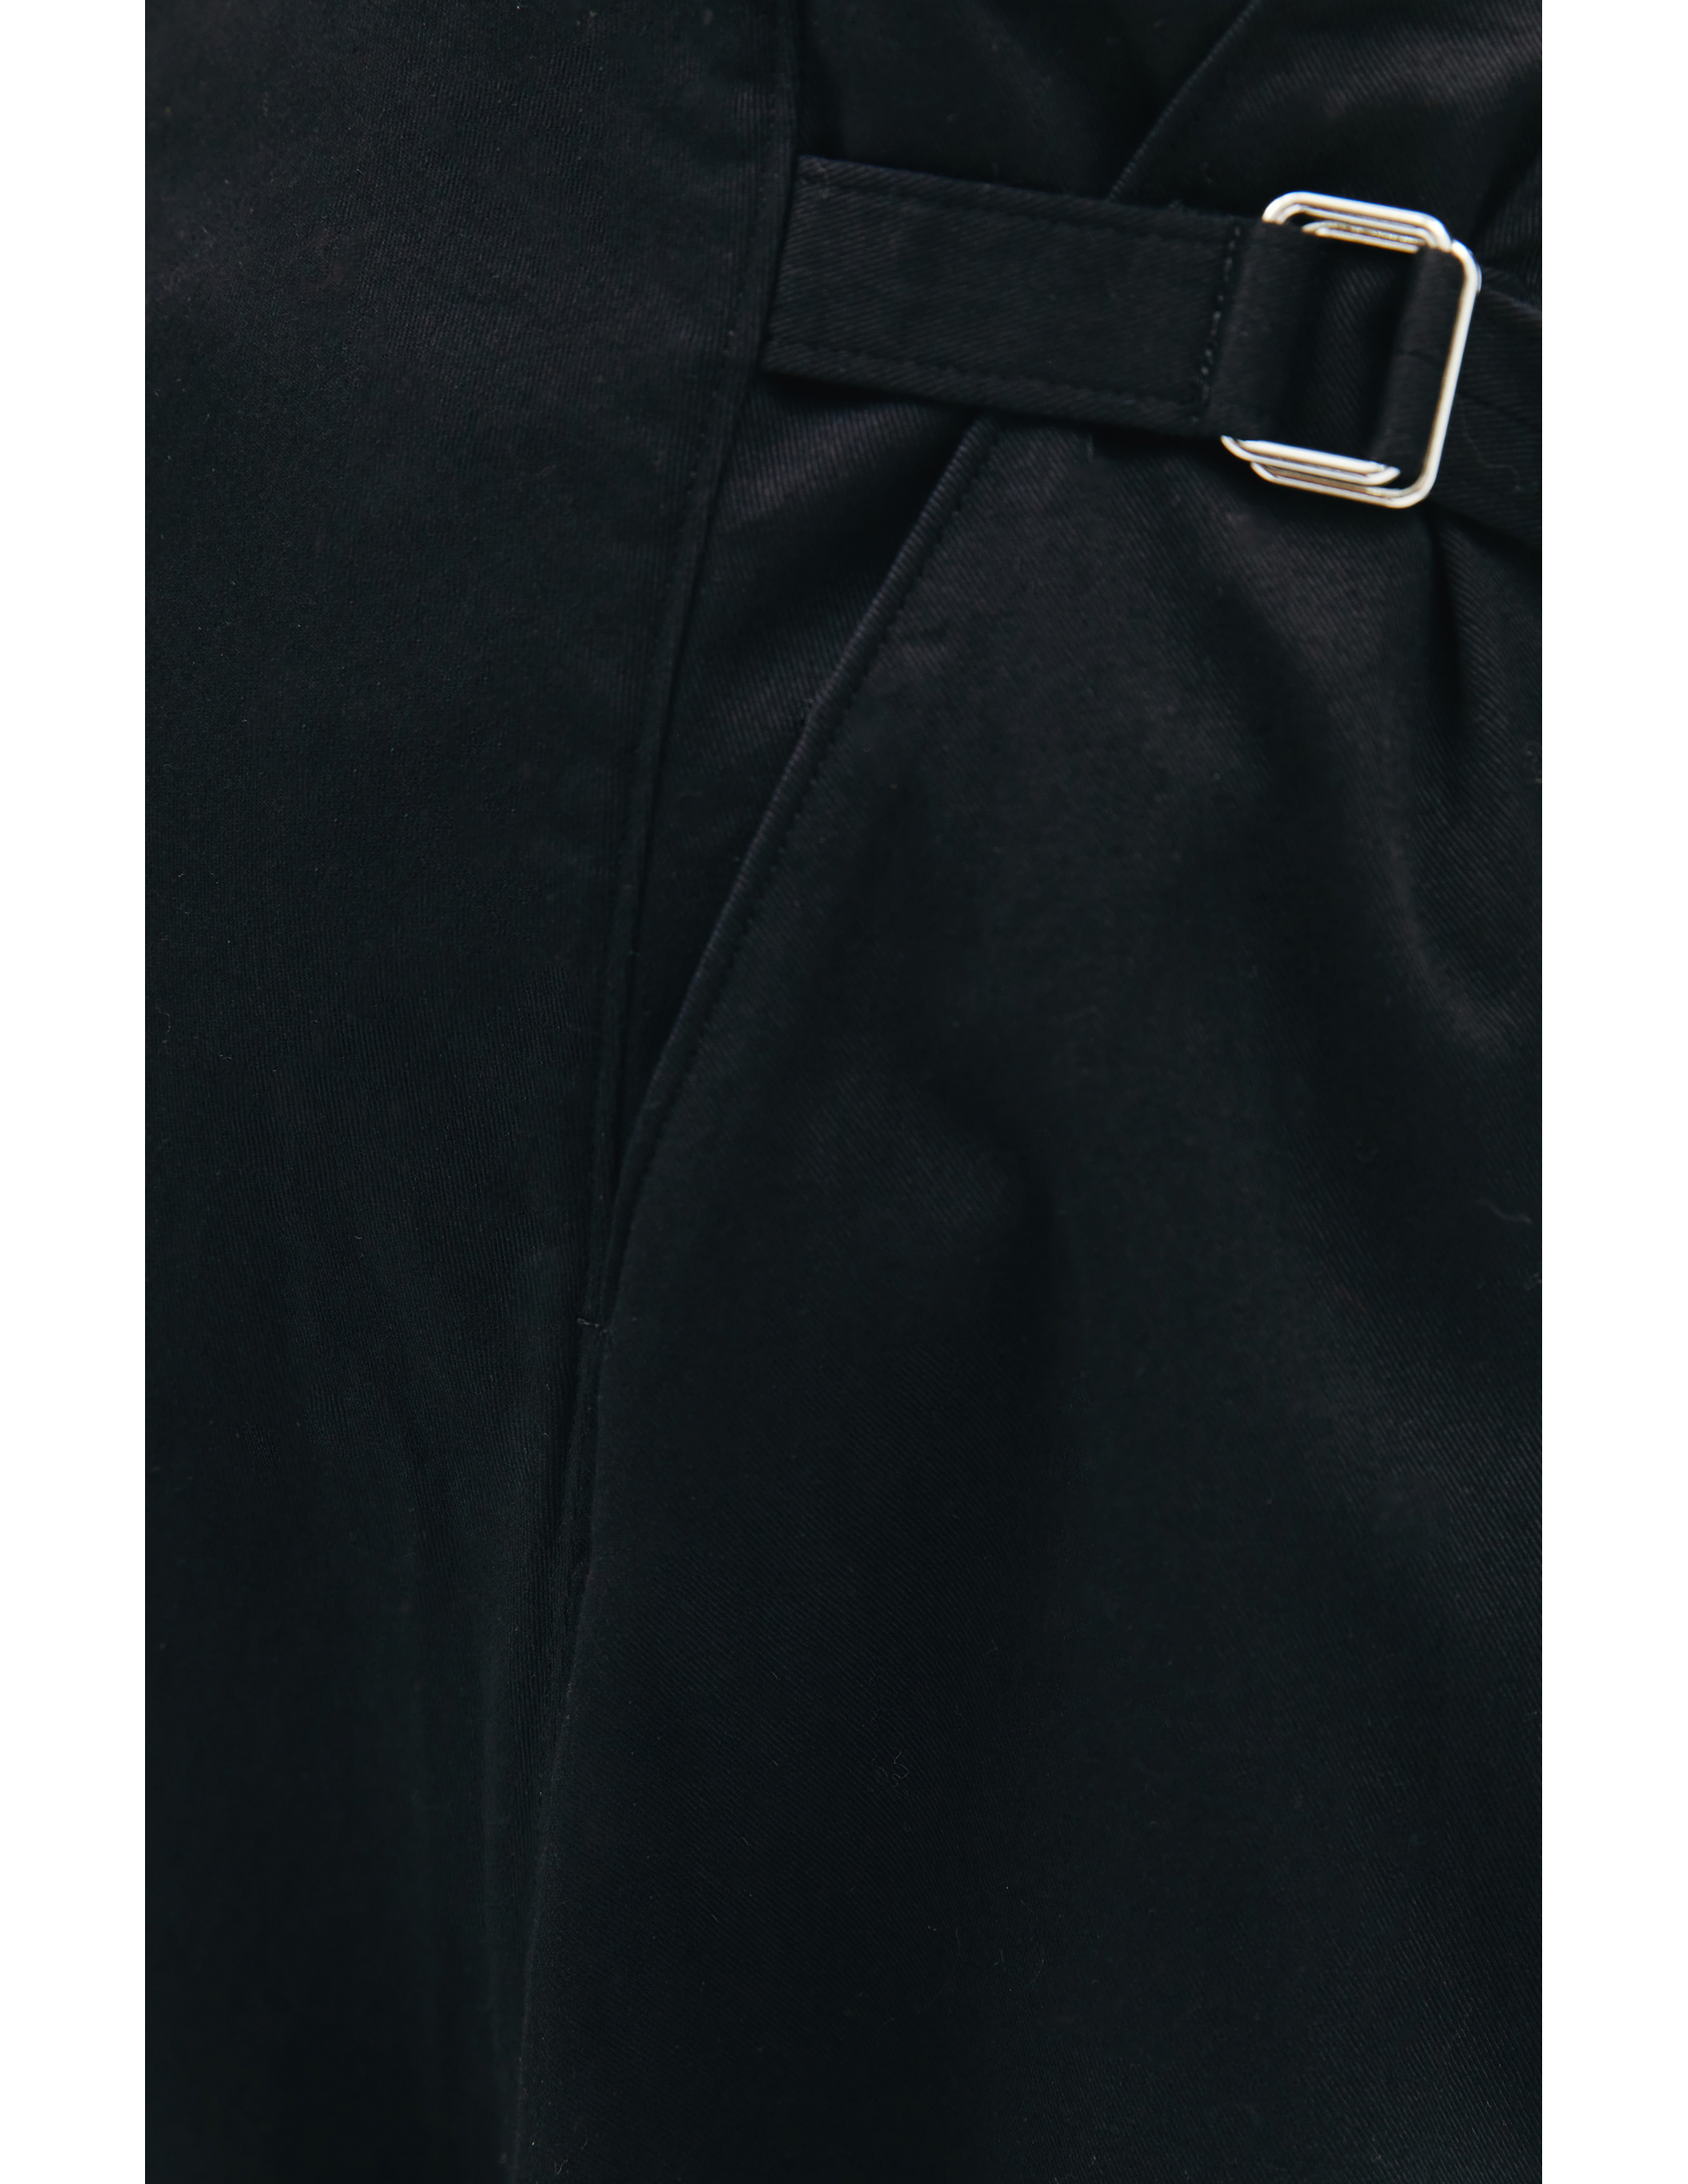 Асимметричная юбка с запахом Ys YX-S80-002-2, размер 3;1 - фото 5